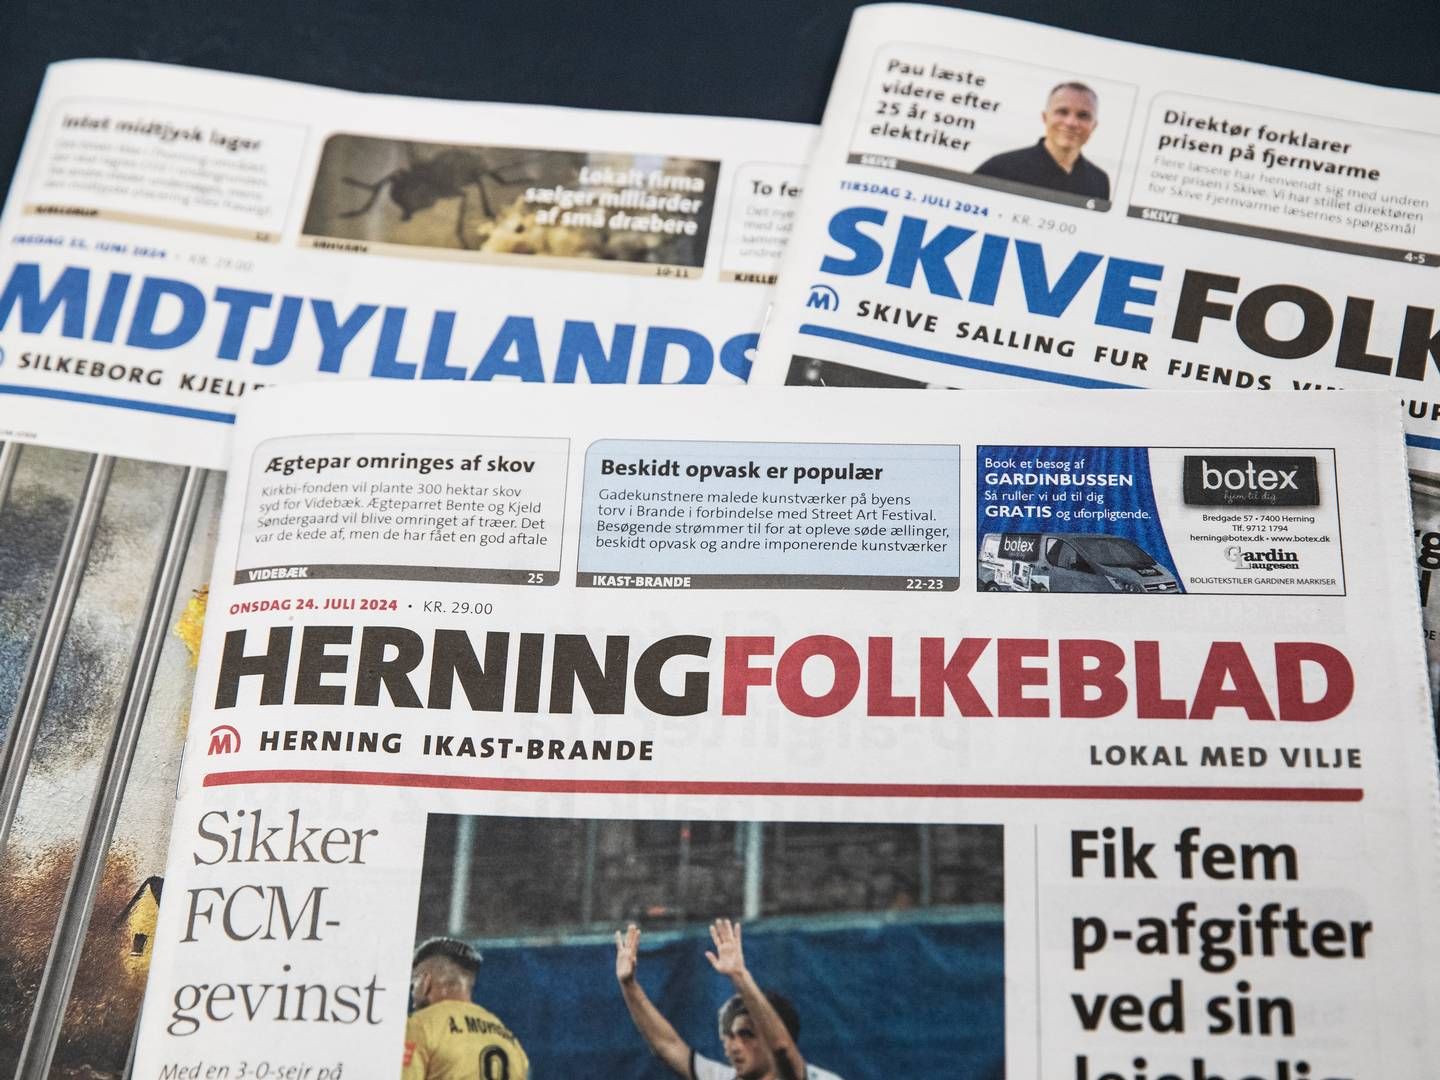 Herning Folkeblad, Midtjyllands Avis og Skive Folkeblad bliver fra 1. september morgenaviser. | Photo: Malene Korsgaard/mediehusene Midtjylland